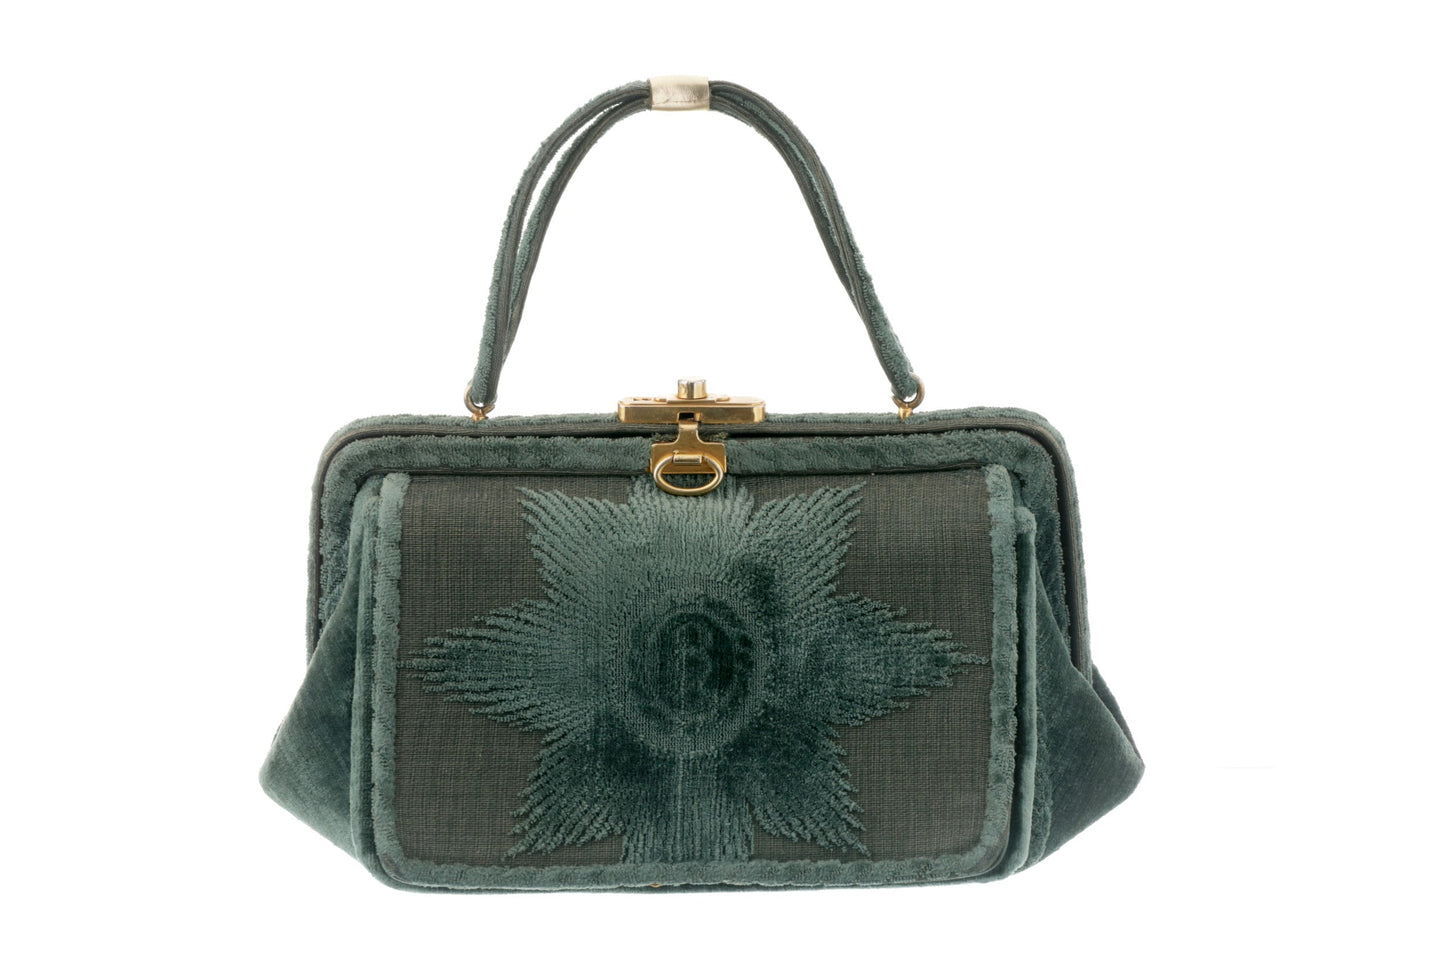 1950s Roberta di Camerino handbag in green devorè velvet